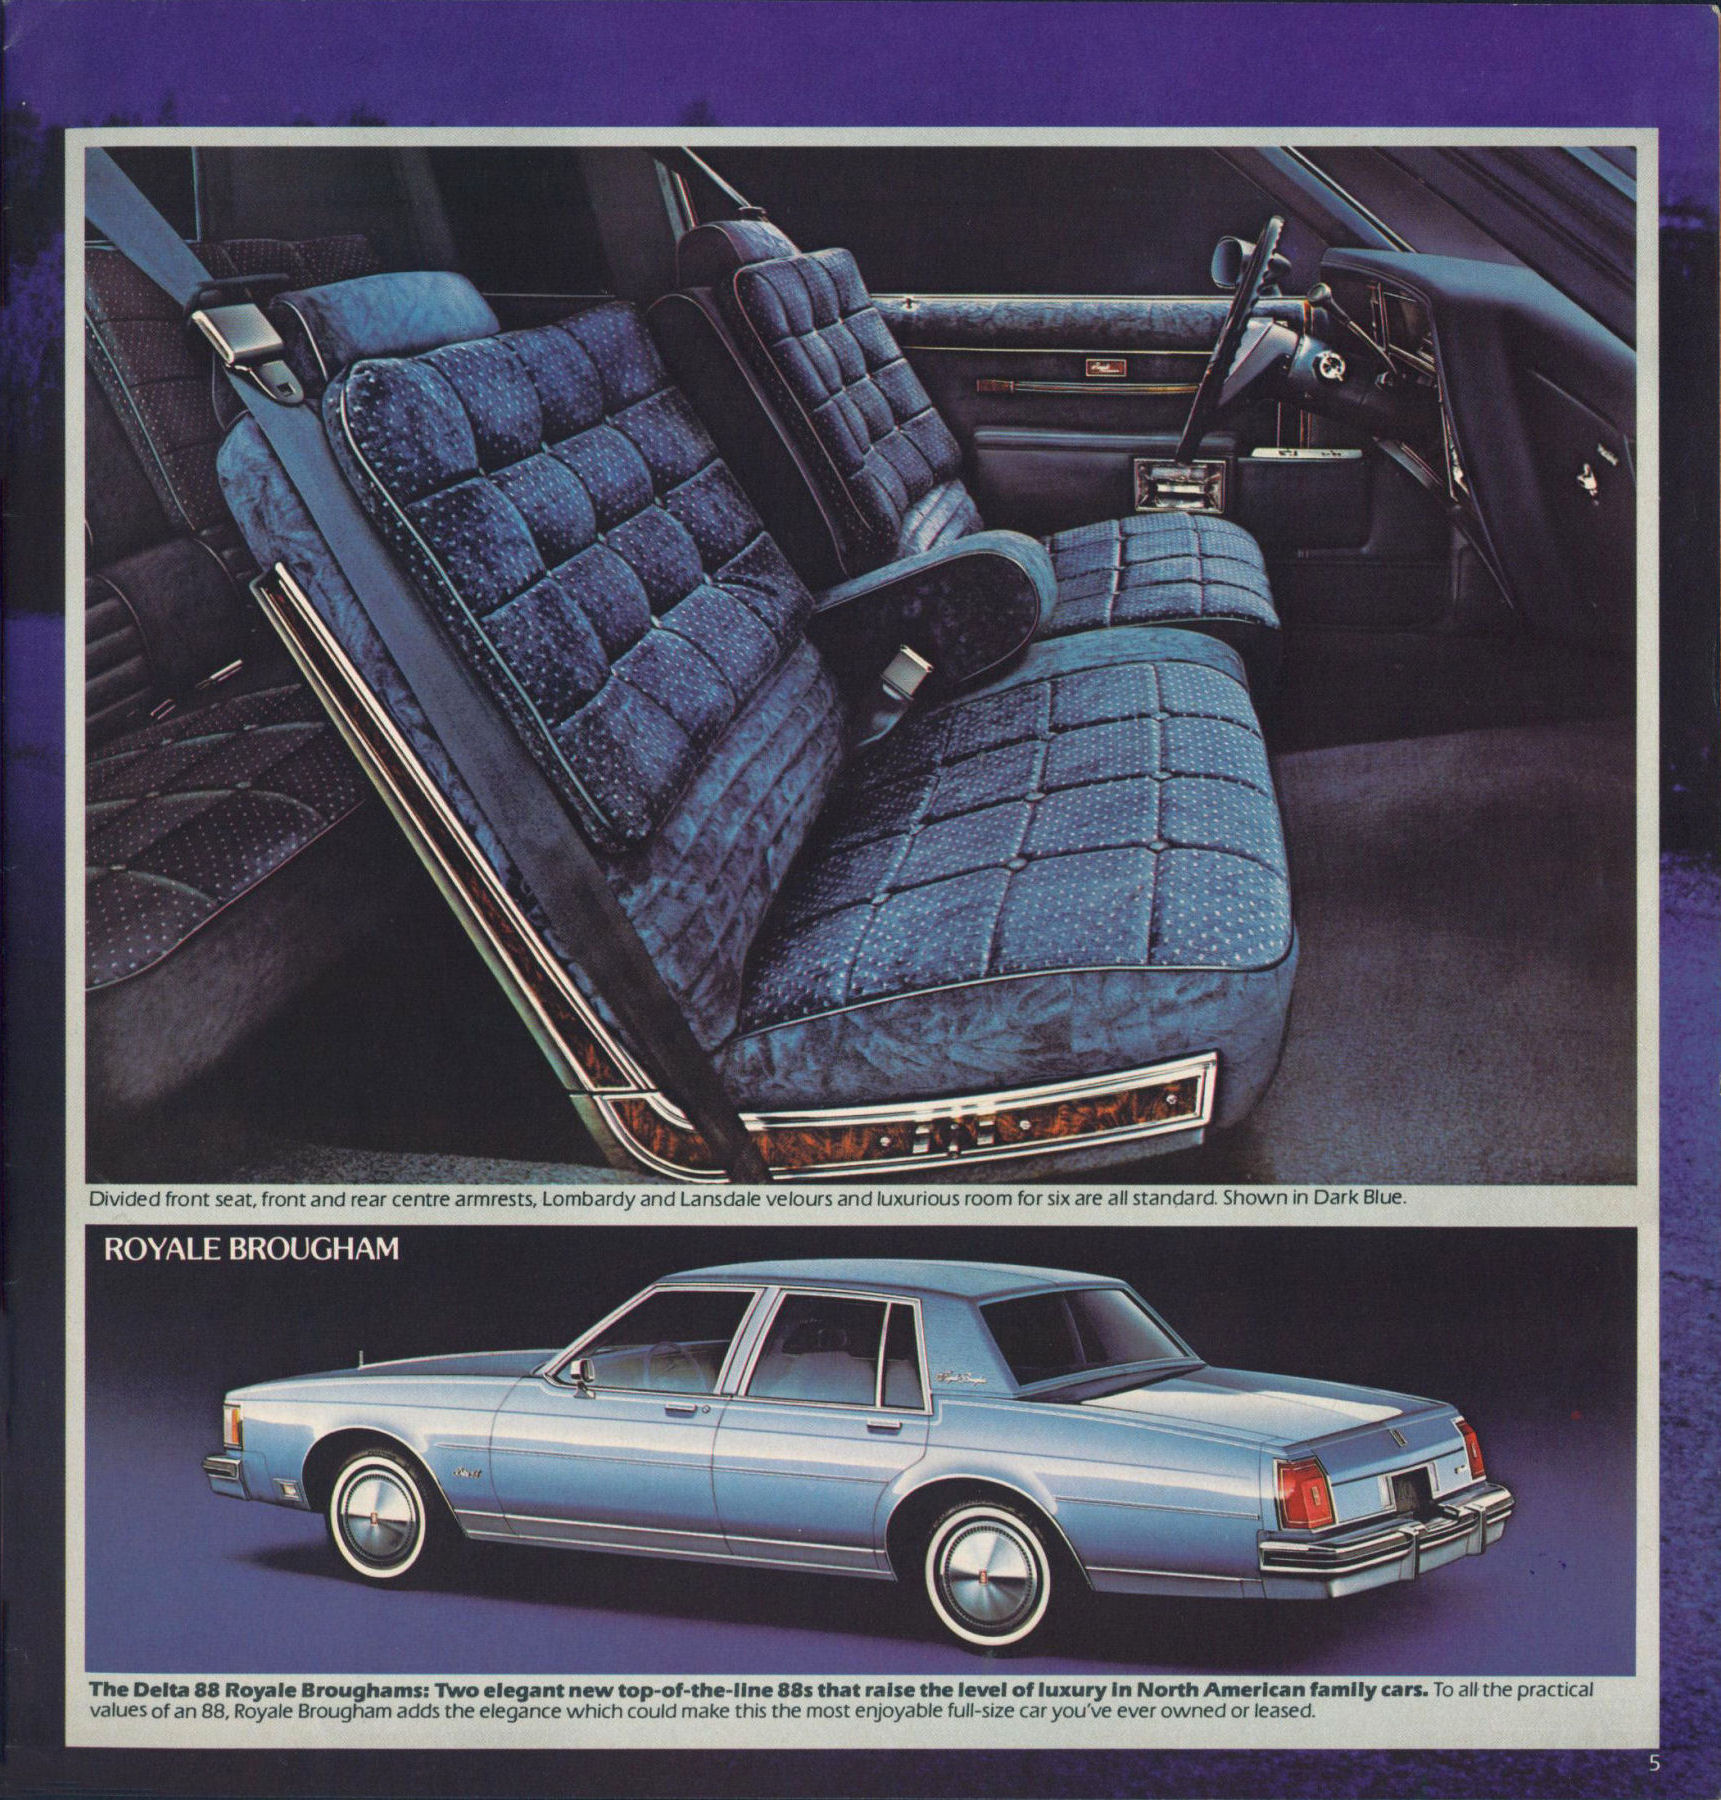 1980_Oldsmobile_Full_Size_Cdn-05